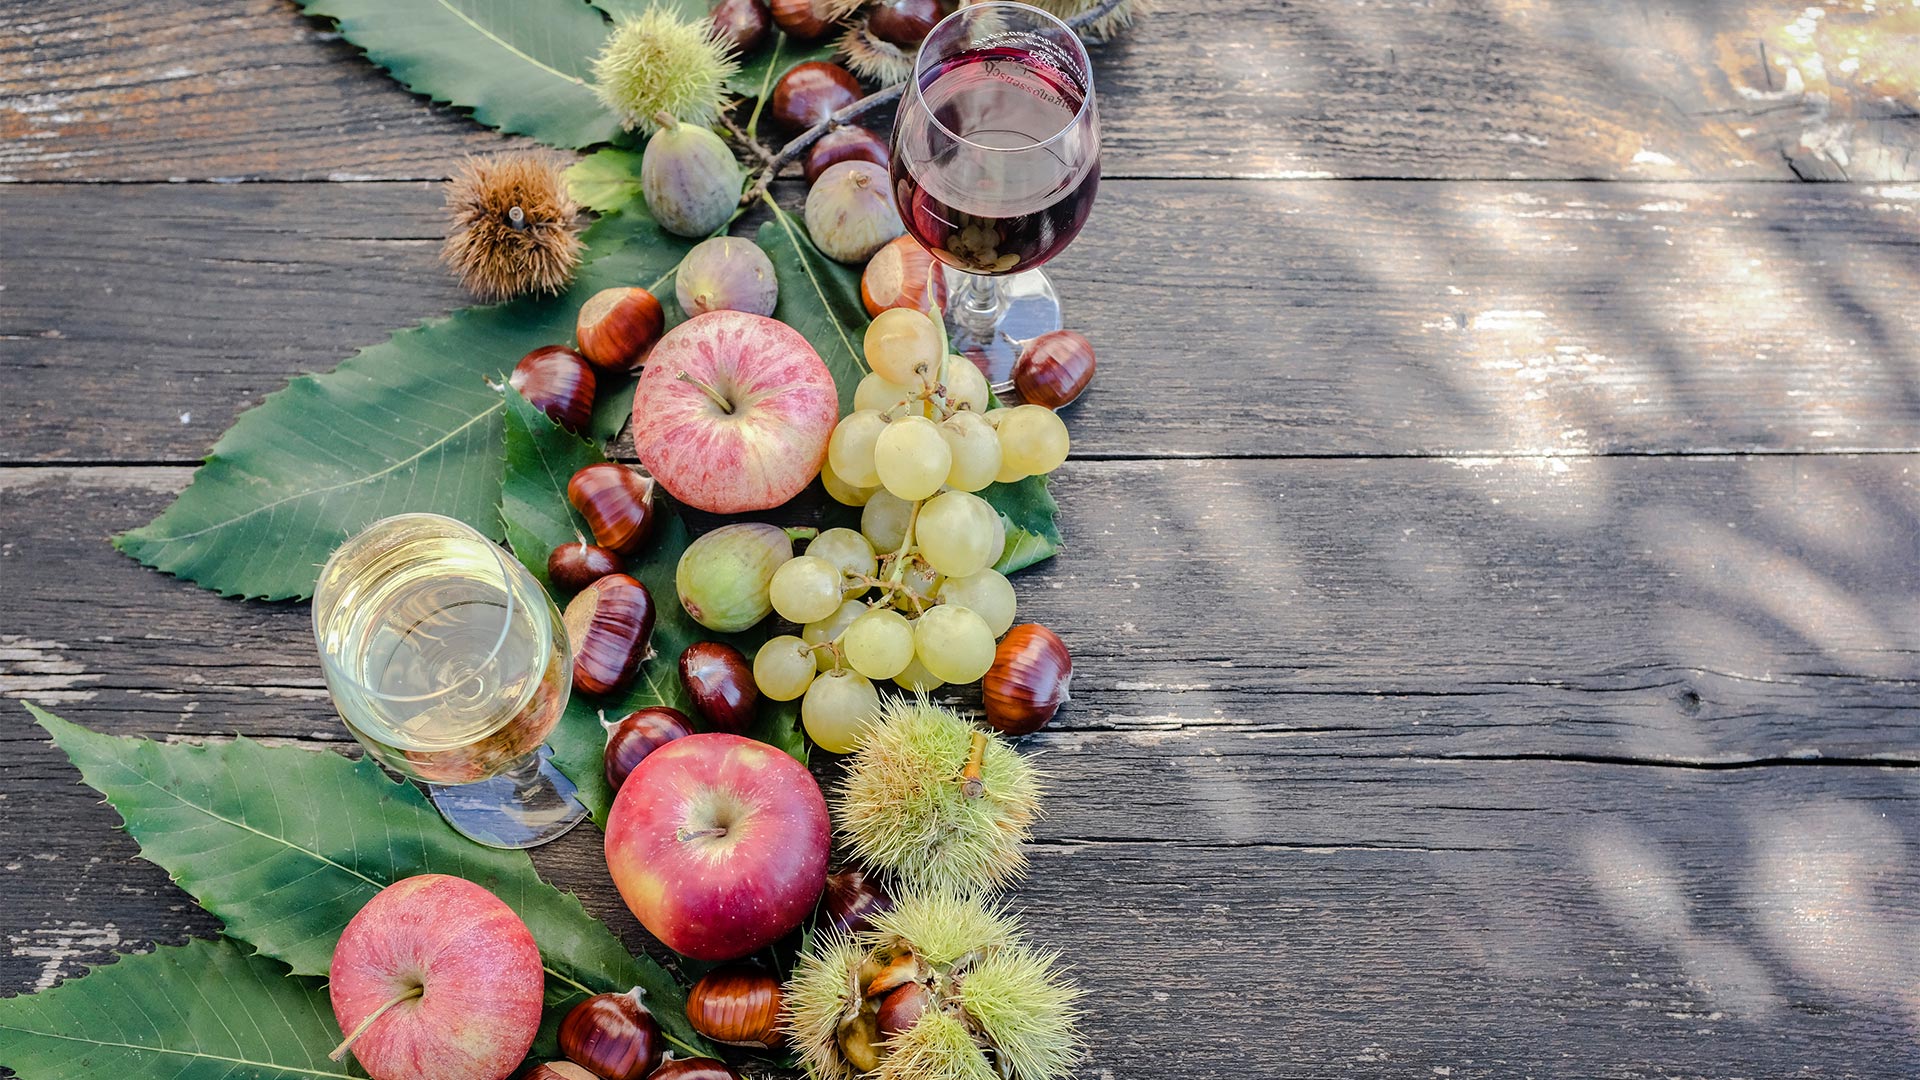 Ein saisonales Gericht aus roten Äpfeln, Weintrauben und Kastanien, begleitet von einem Glas Weißwein.